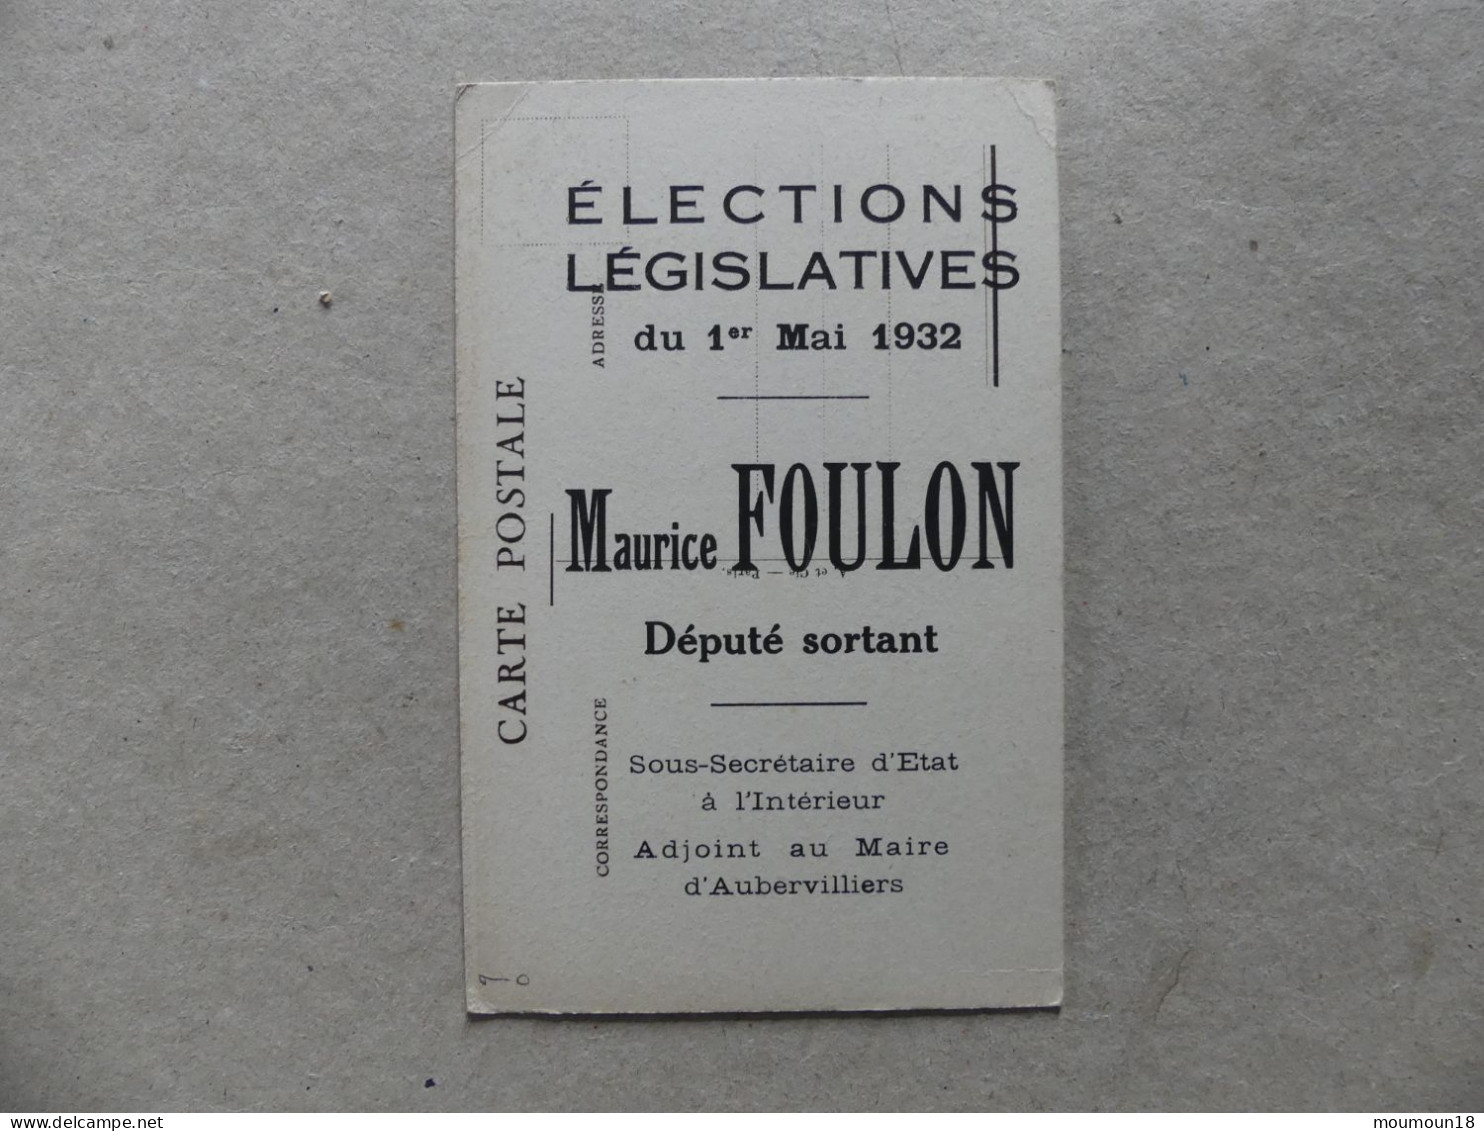 Maurice Foulon Elections Législatives 1932 Député Sortant Sous-Secrétaire D'Etat Intérieur Adjoint Maire Aubervilliers - Hommes Politiques & Militaires